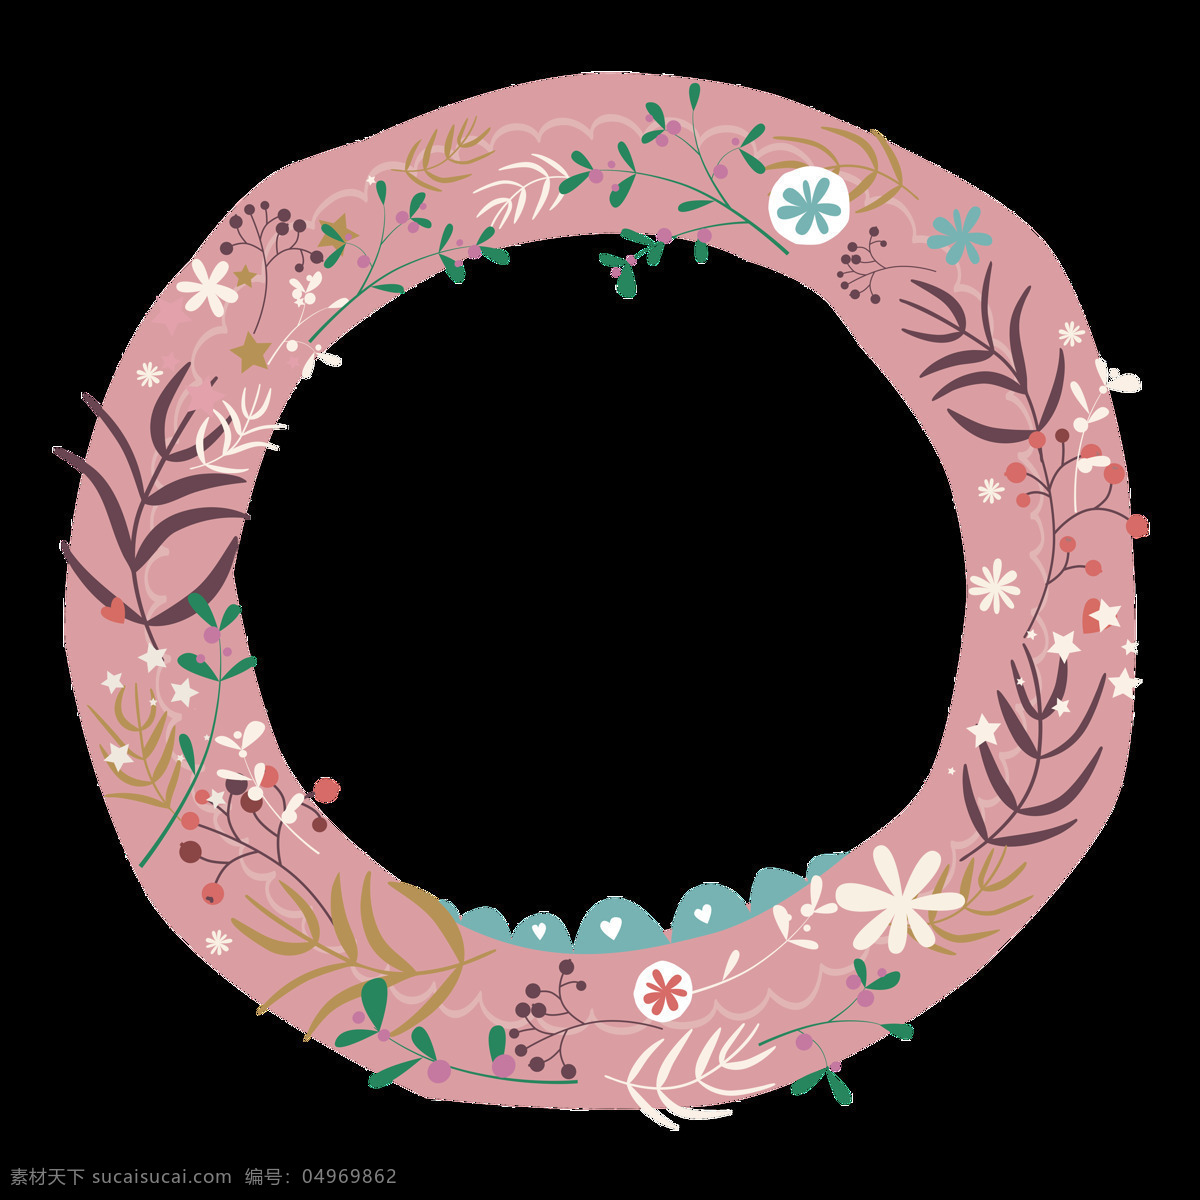 粉色 圆形 花环 卡通 透明 抠图专用 装饰 设计素材